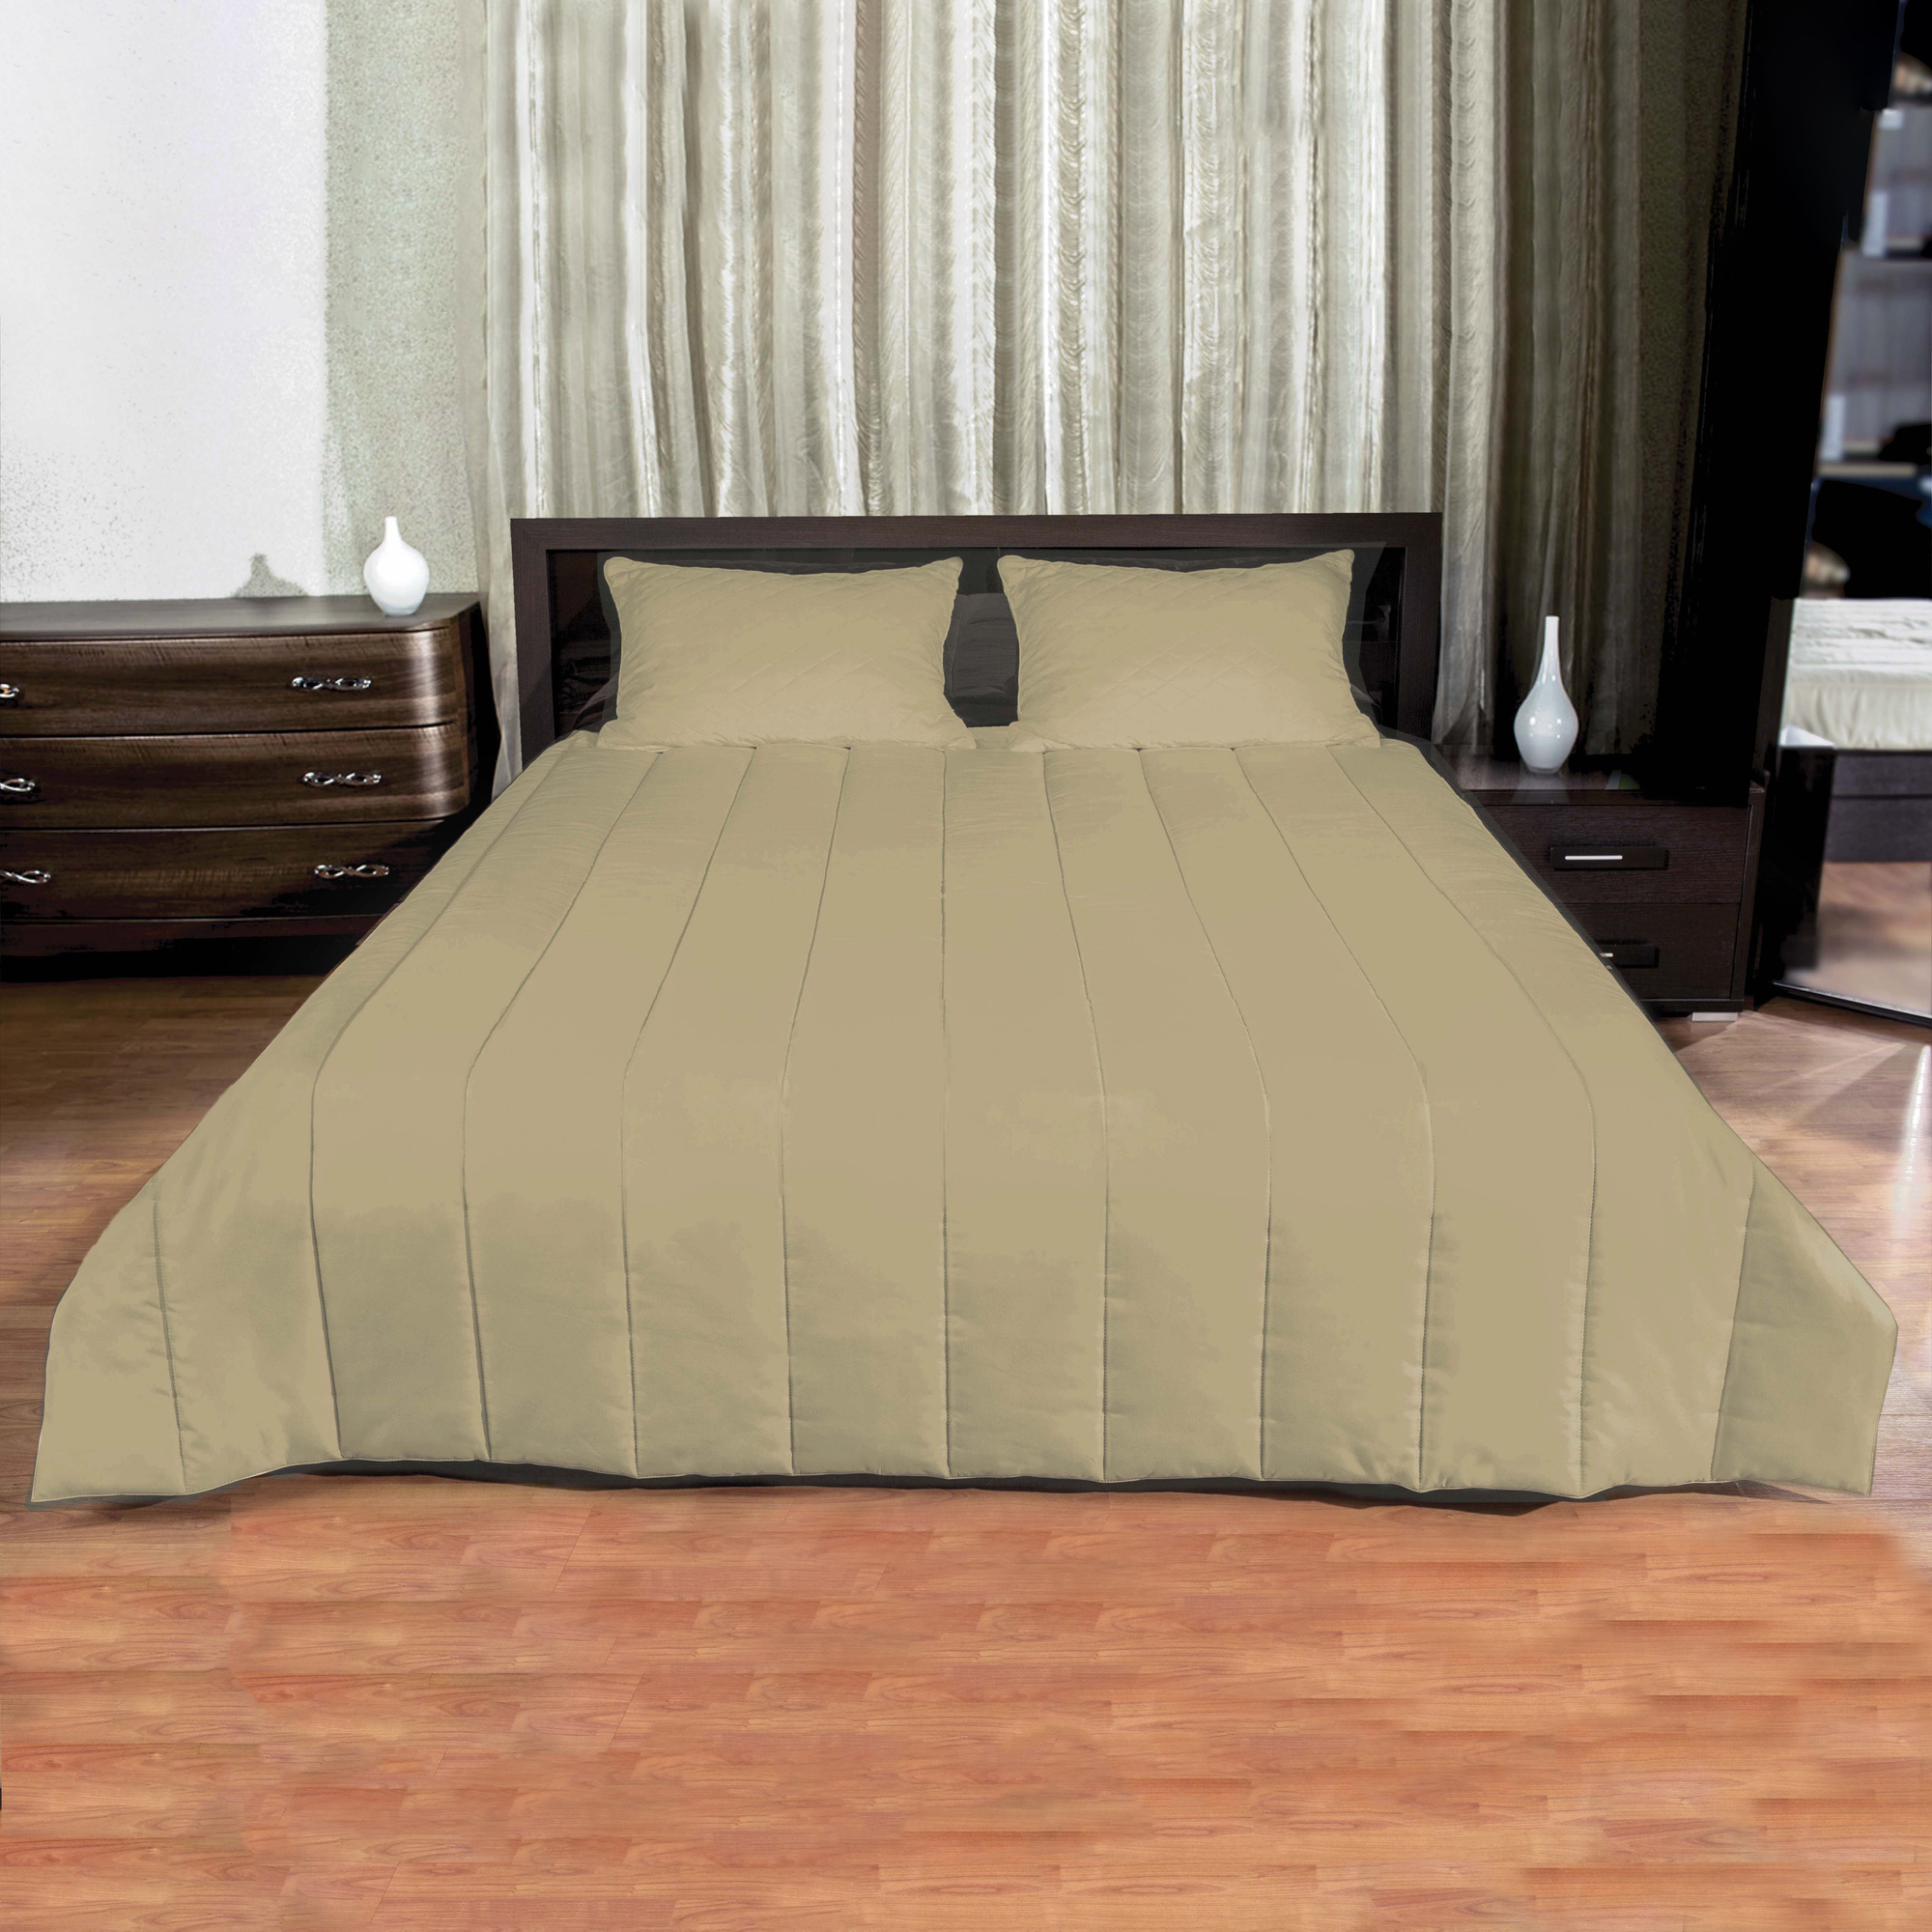 Одеяло Fiona (140х205 см), размер 140х205 см, цвет бежевый pve335737 Одеяло Fiona (140х205 см) - фото 1